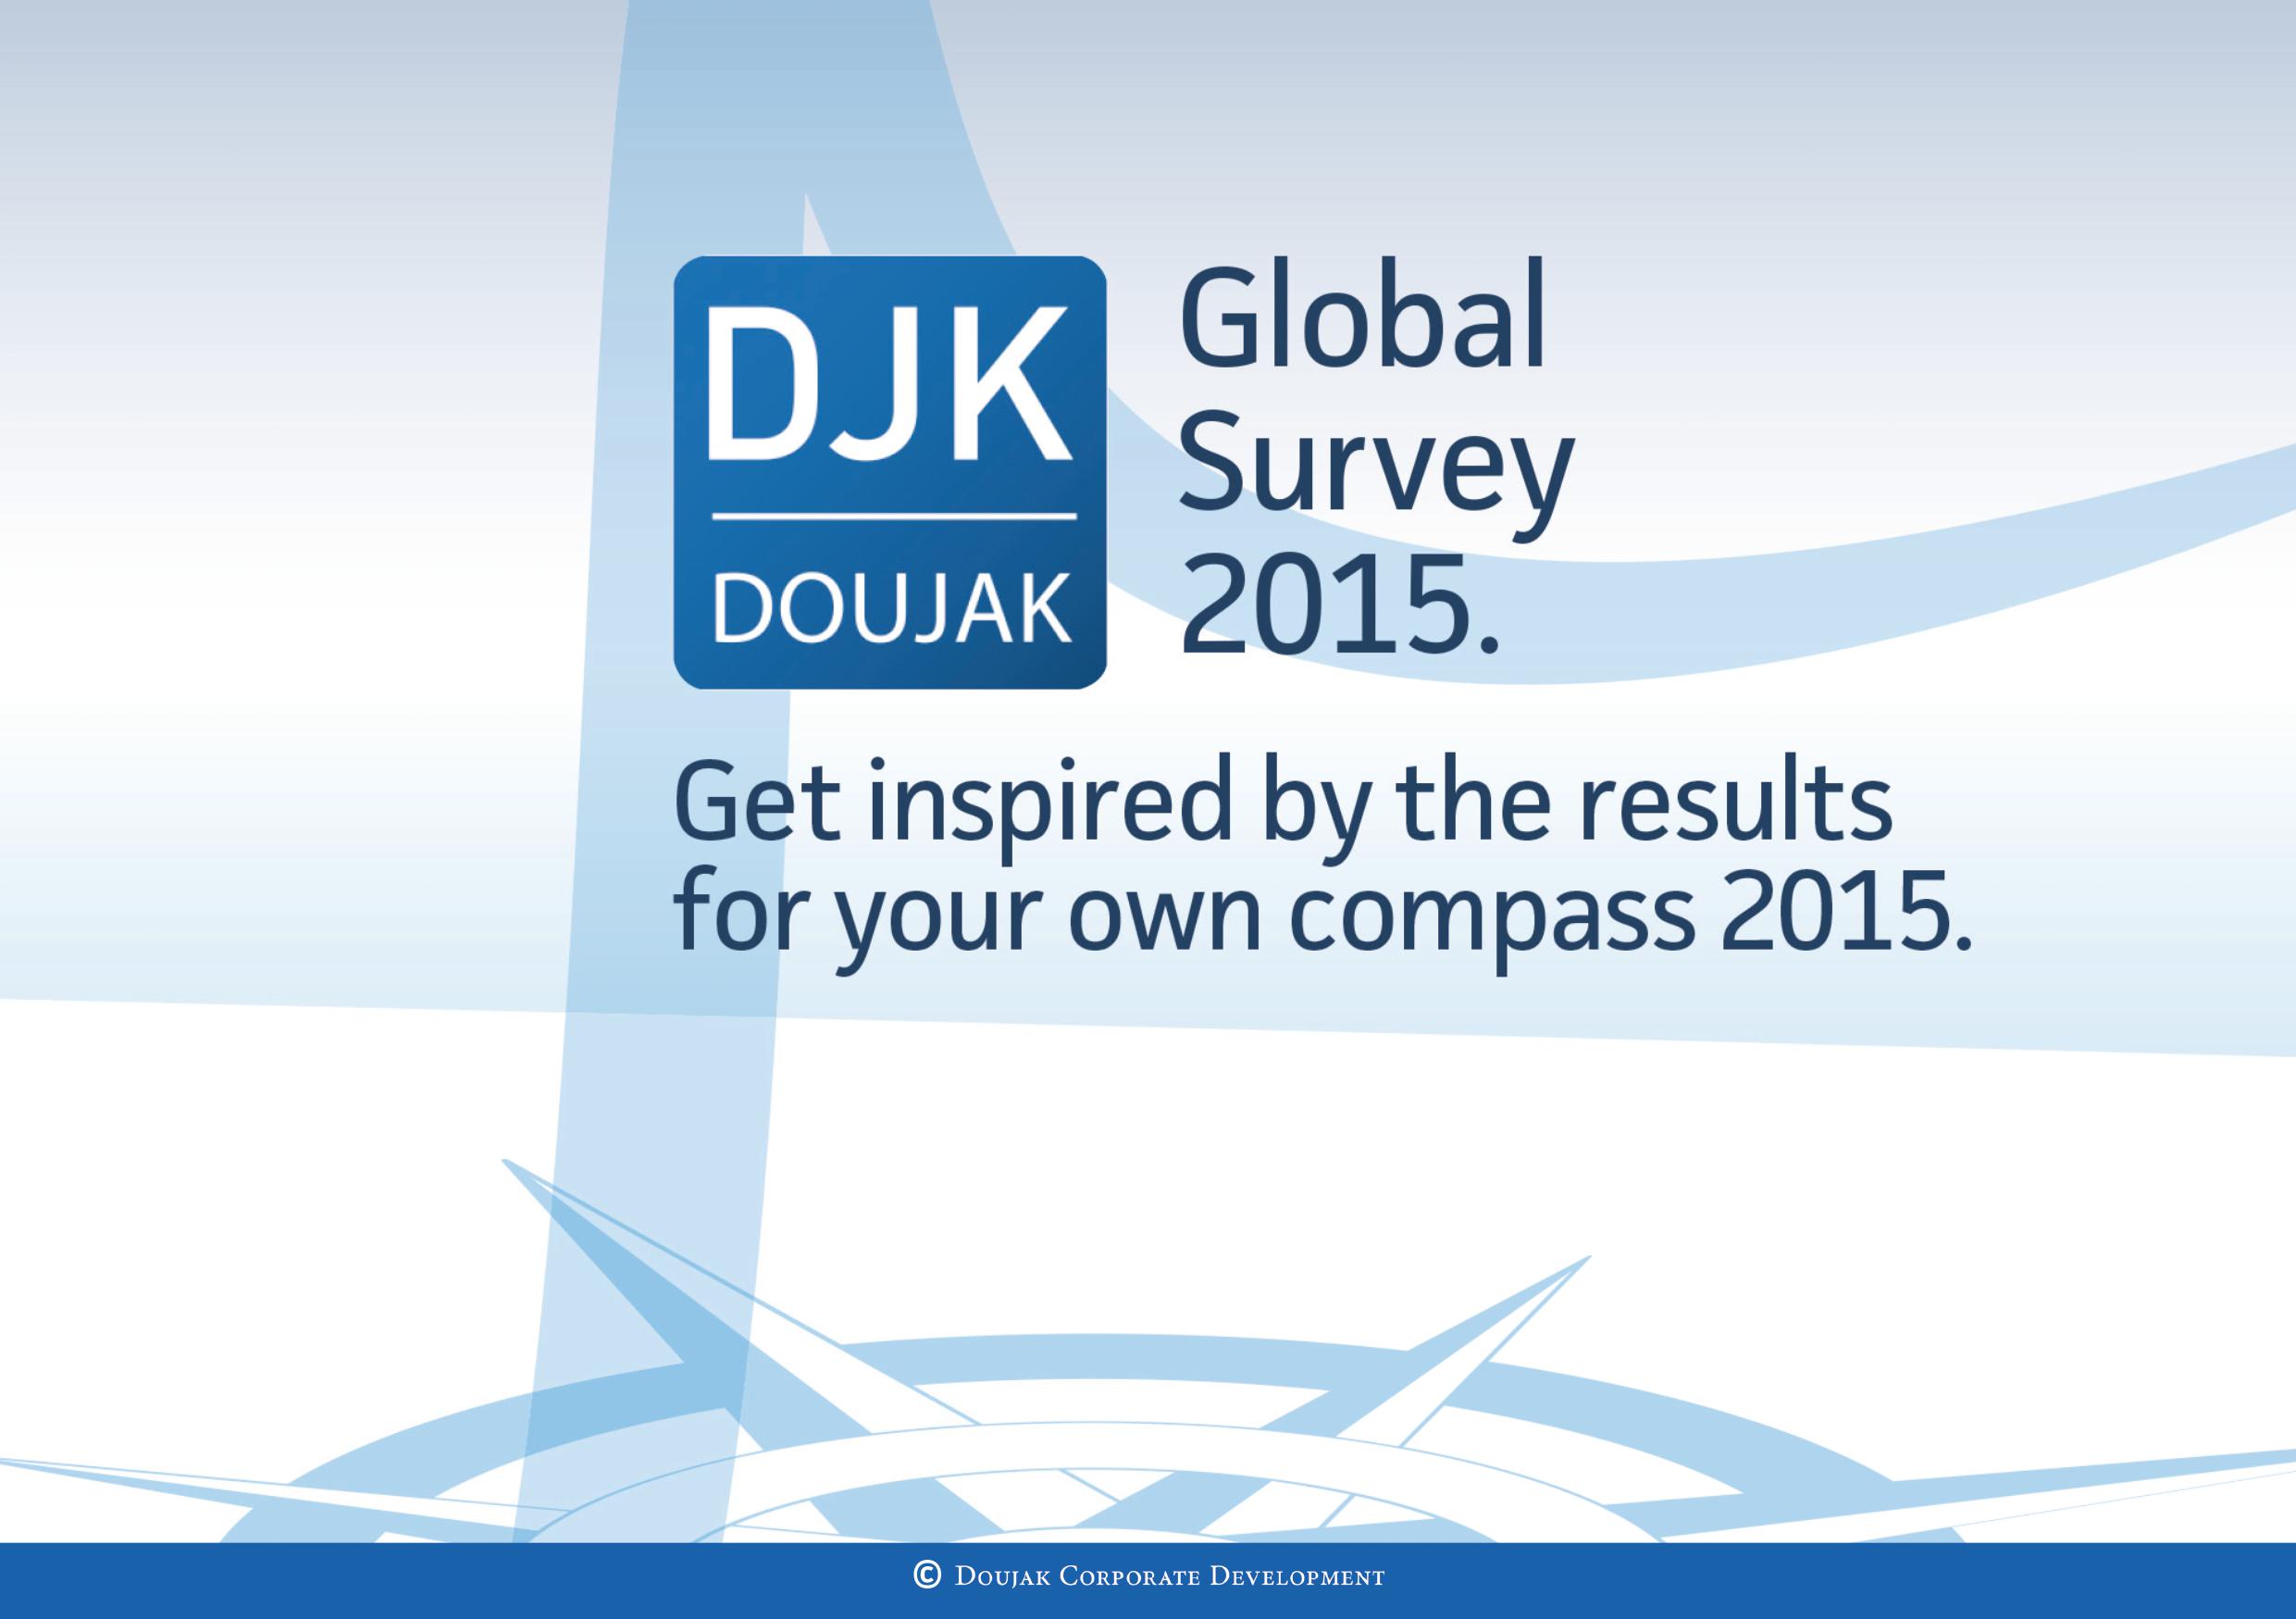 THE DOUJAK GLOBAL SURVEY 2015